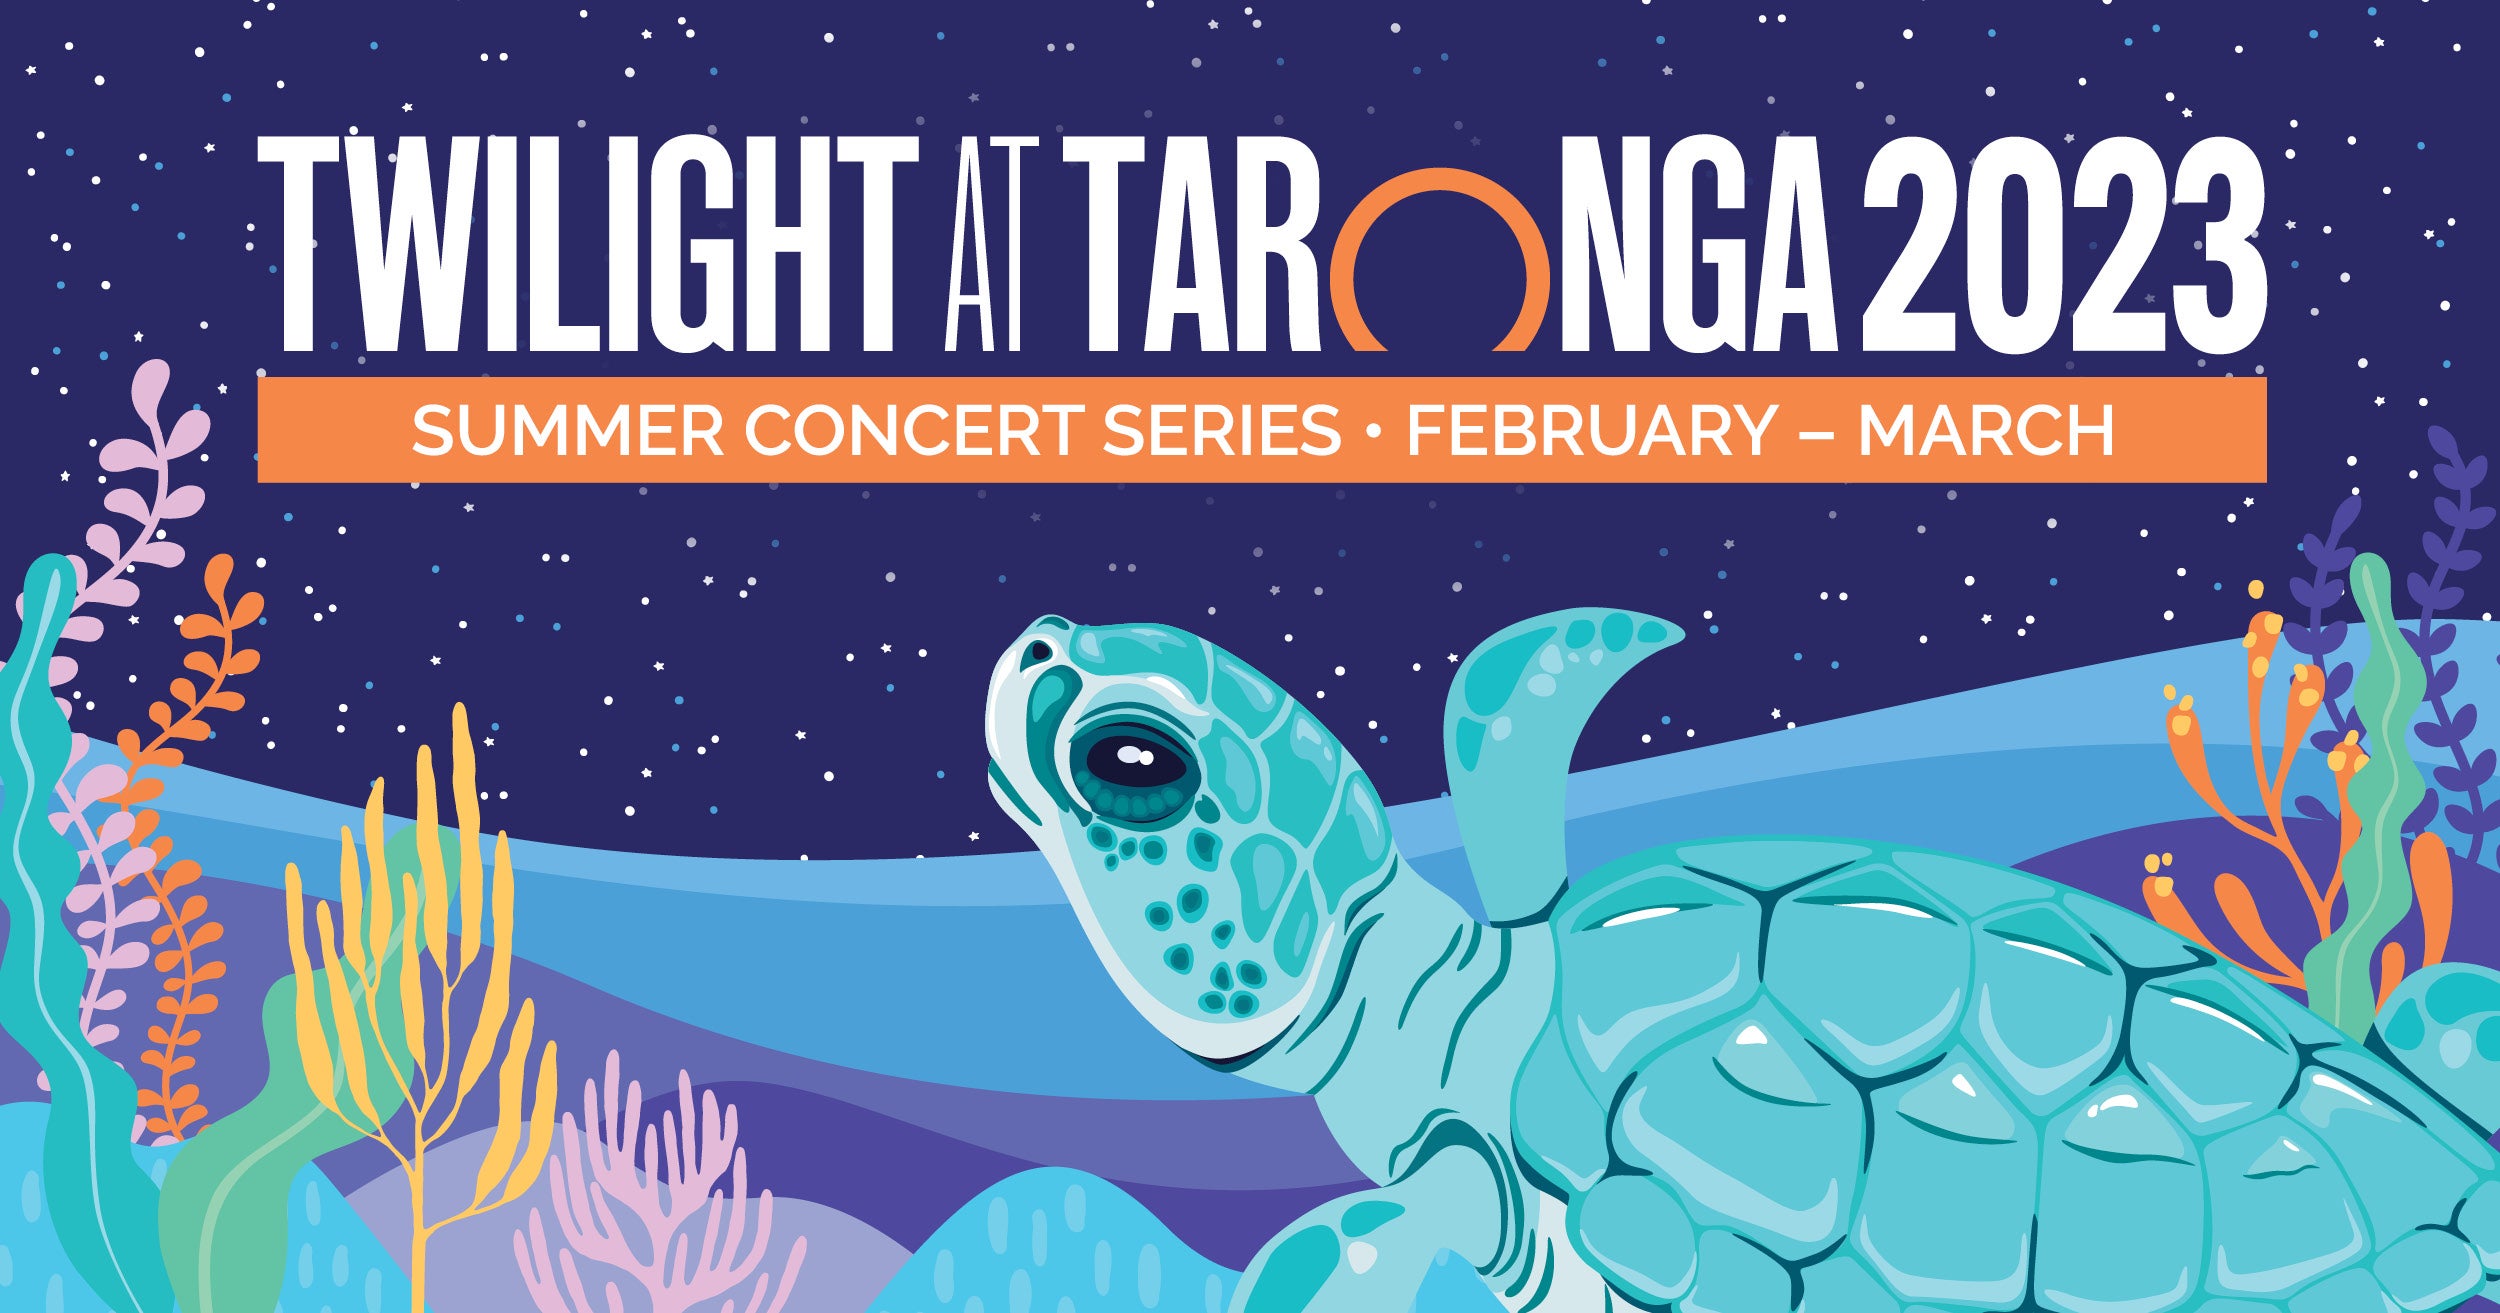 Twilight At Taronga 2023 Summer Concert Series Kicks Off Next Month